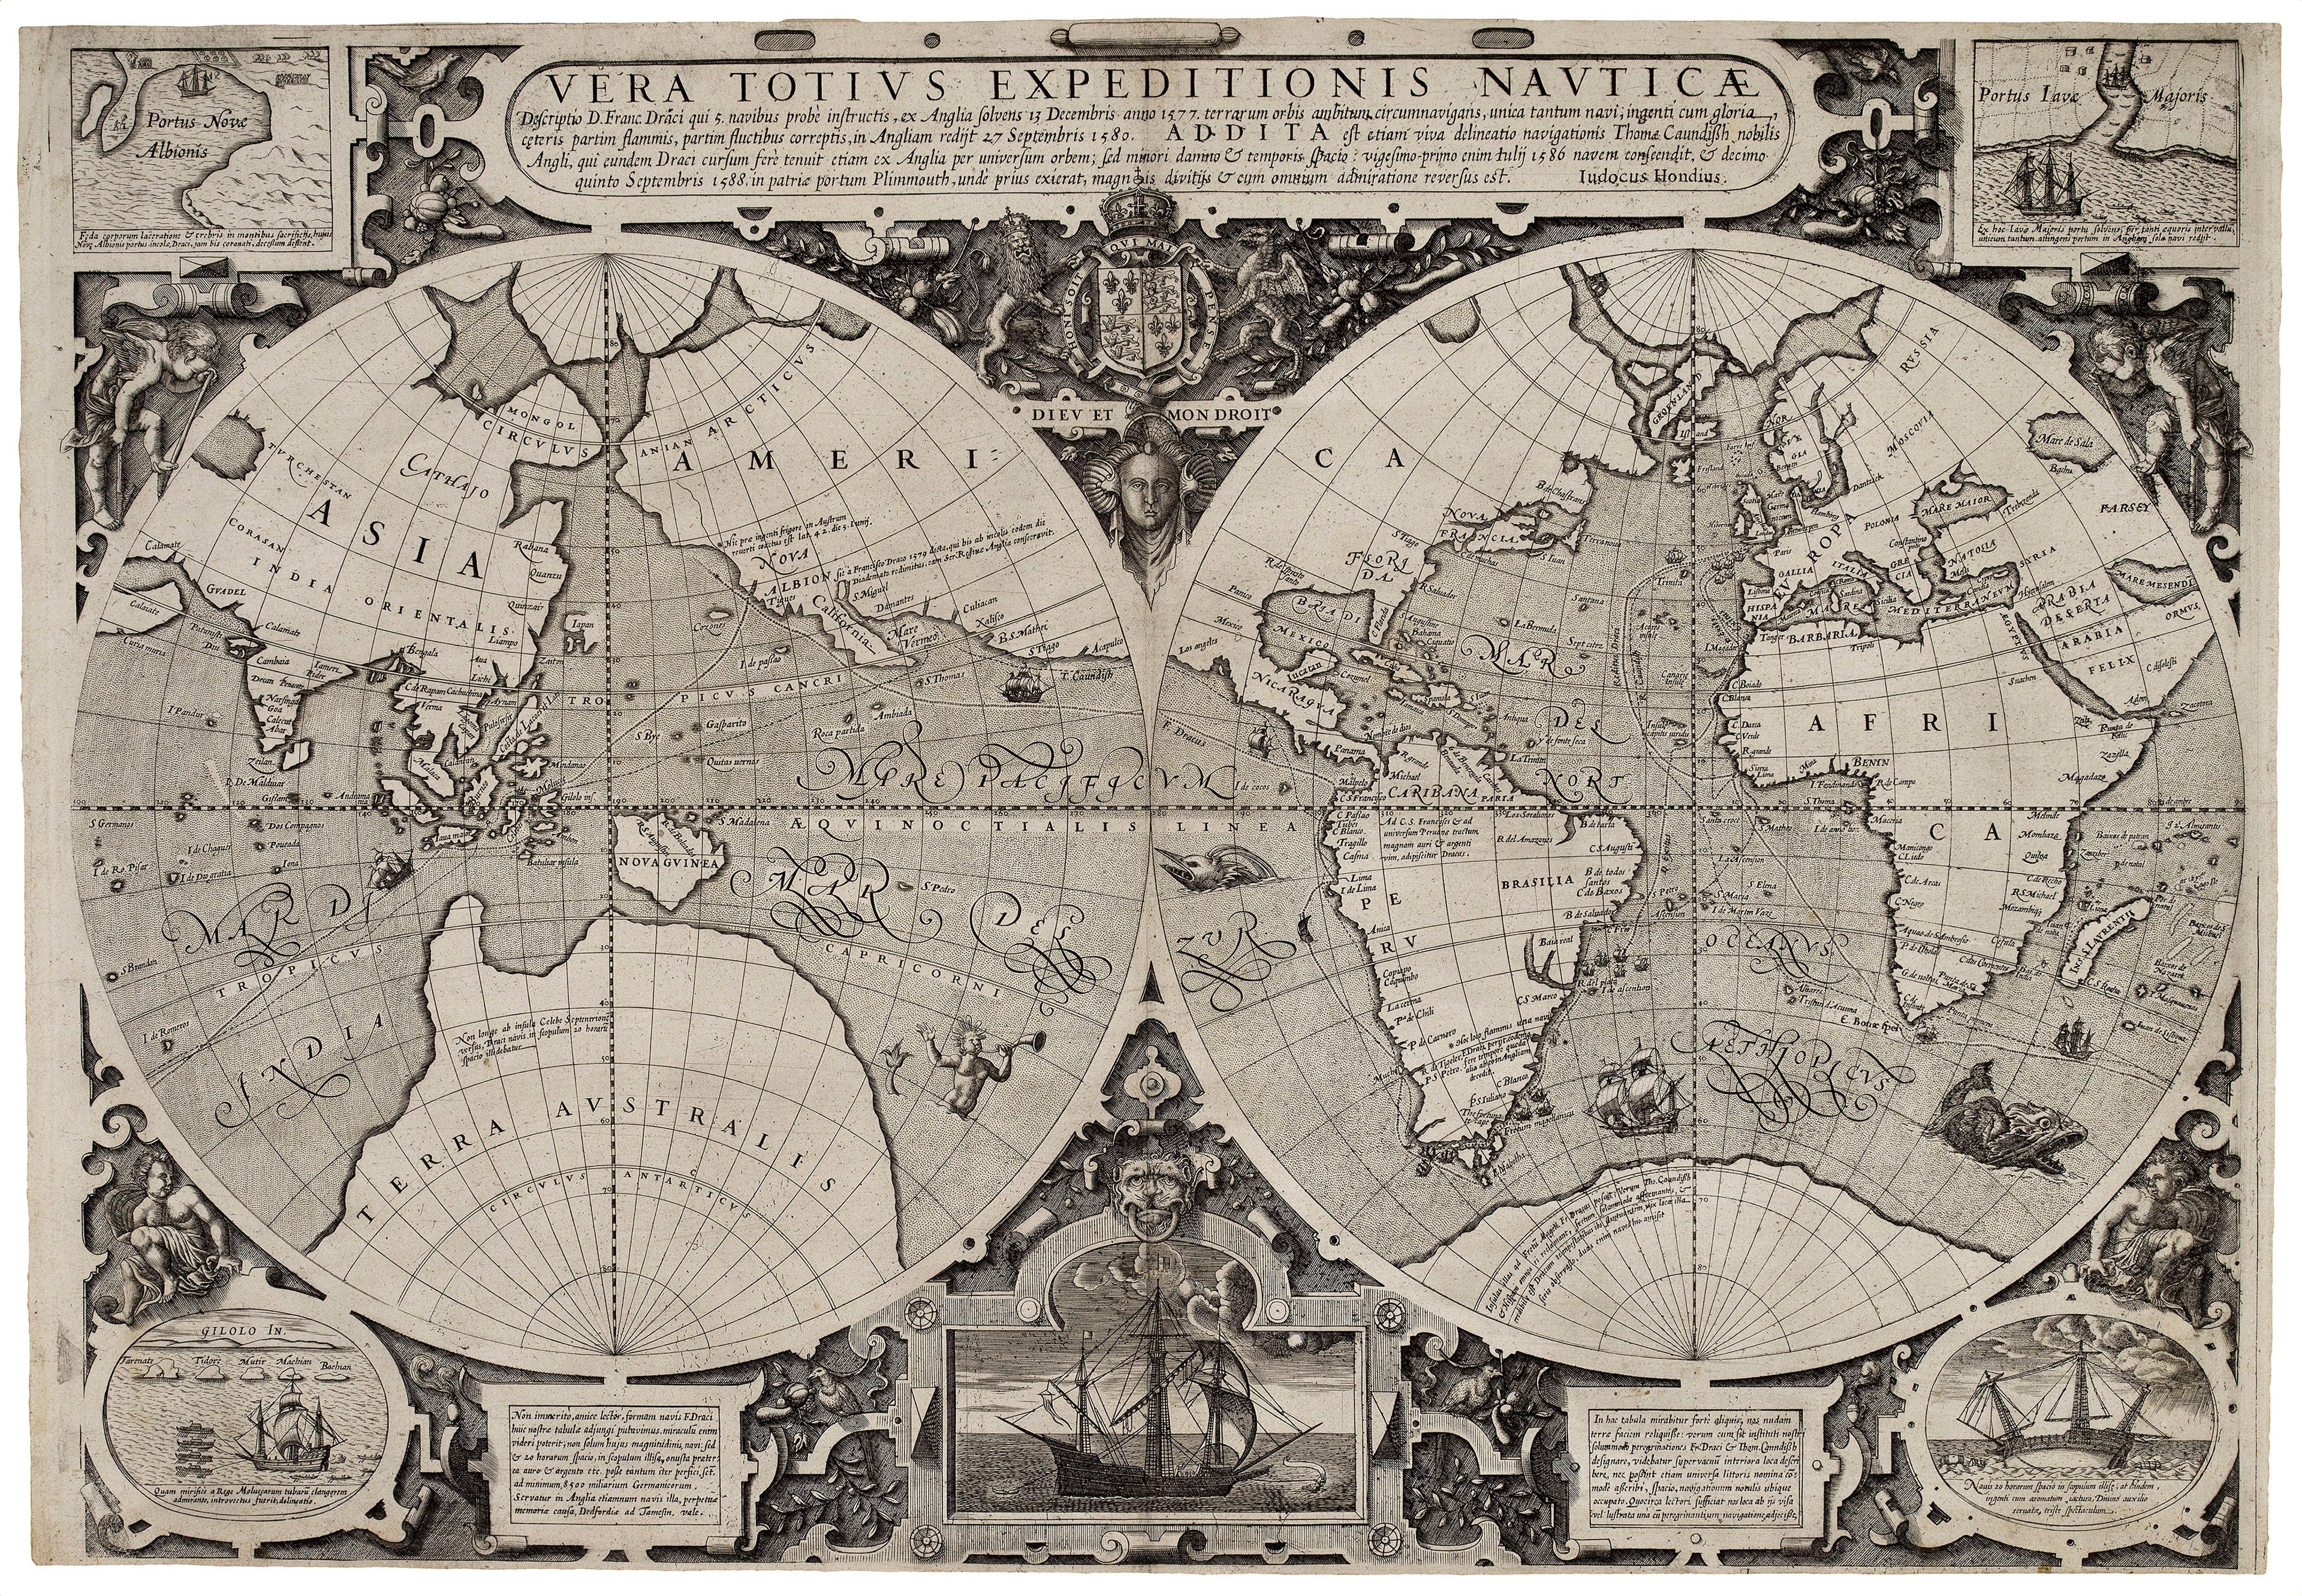 Jodocus Hondius, Vera Totius Expeditionis Nauticae, c.1595